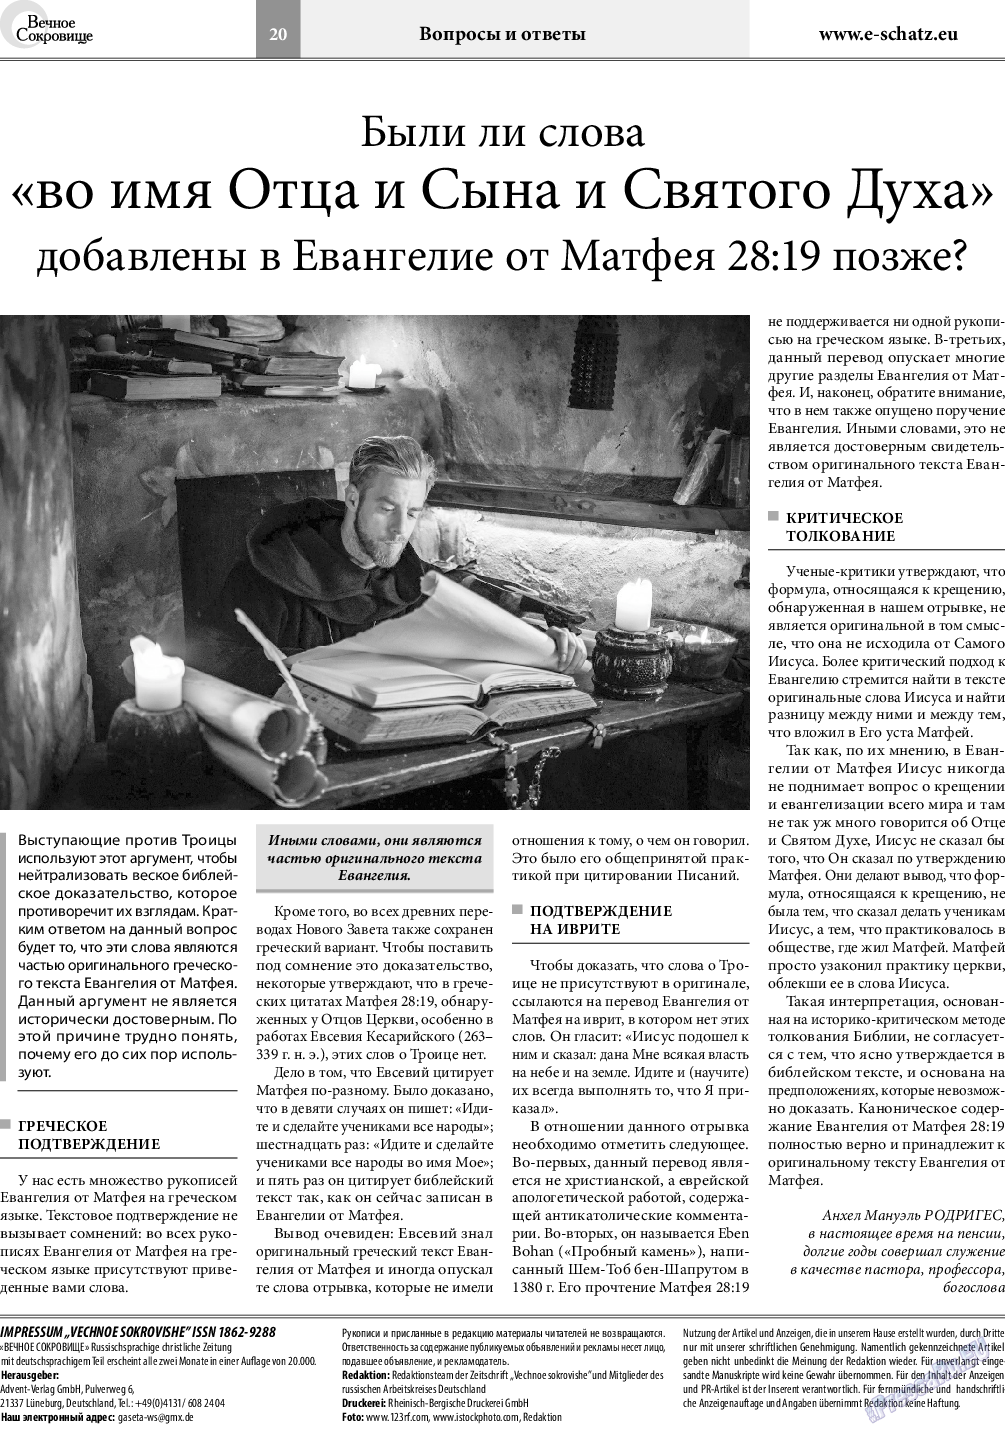 Вечное сокровище, газета. 2019 №2 стр.20